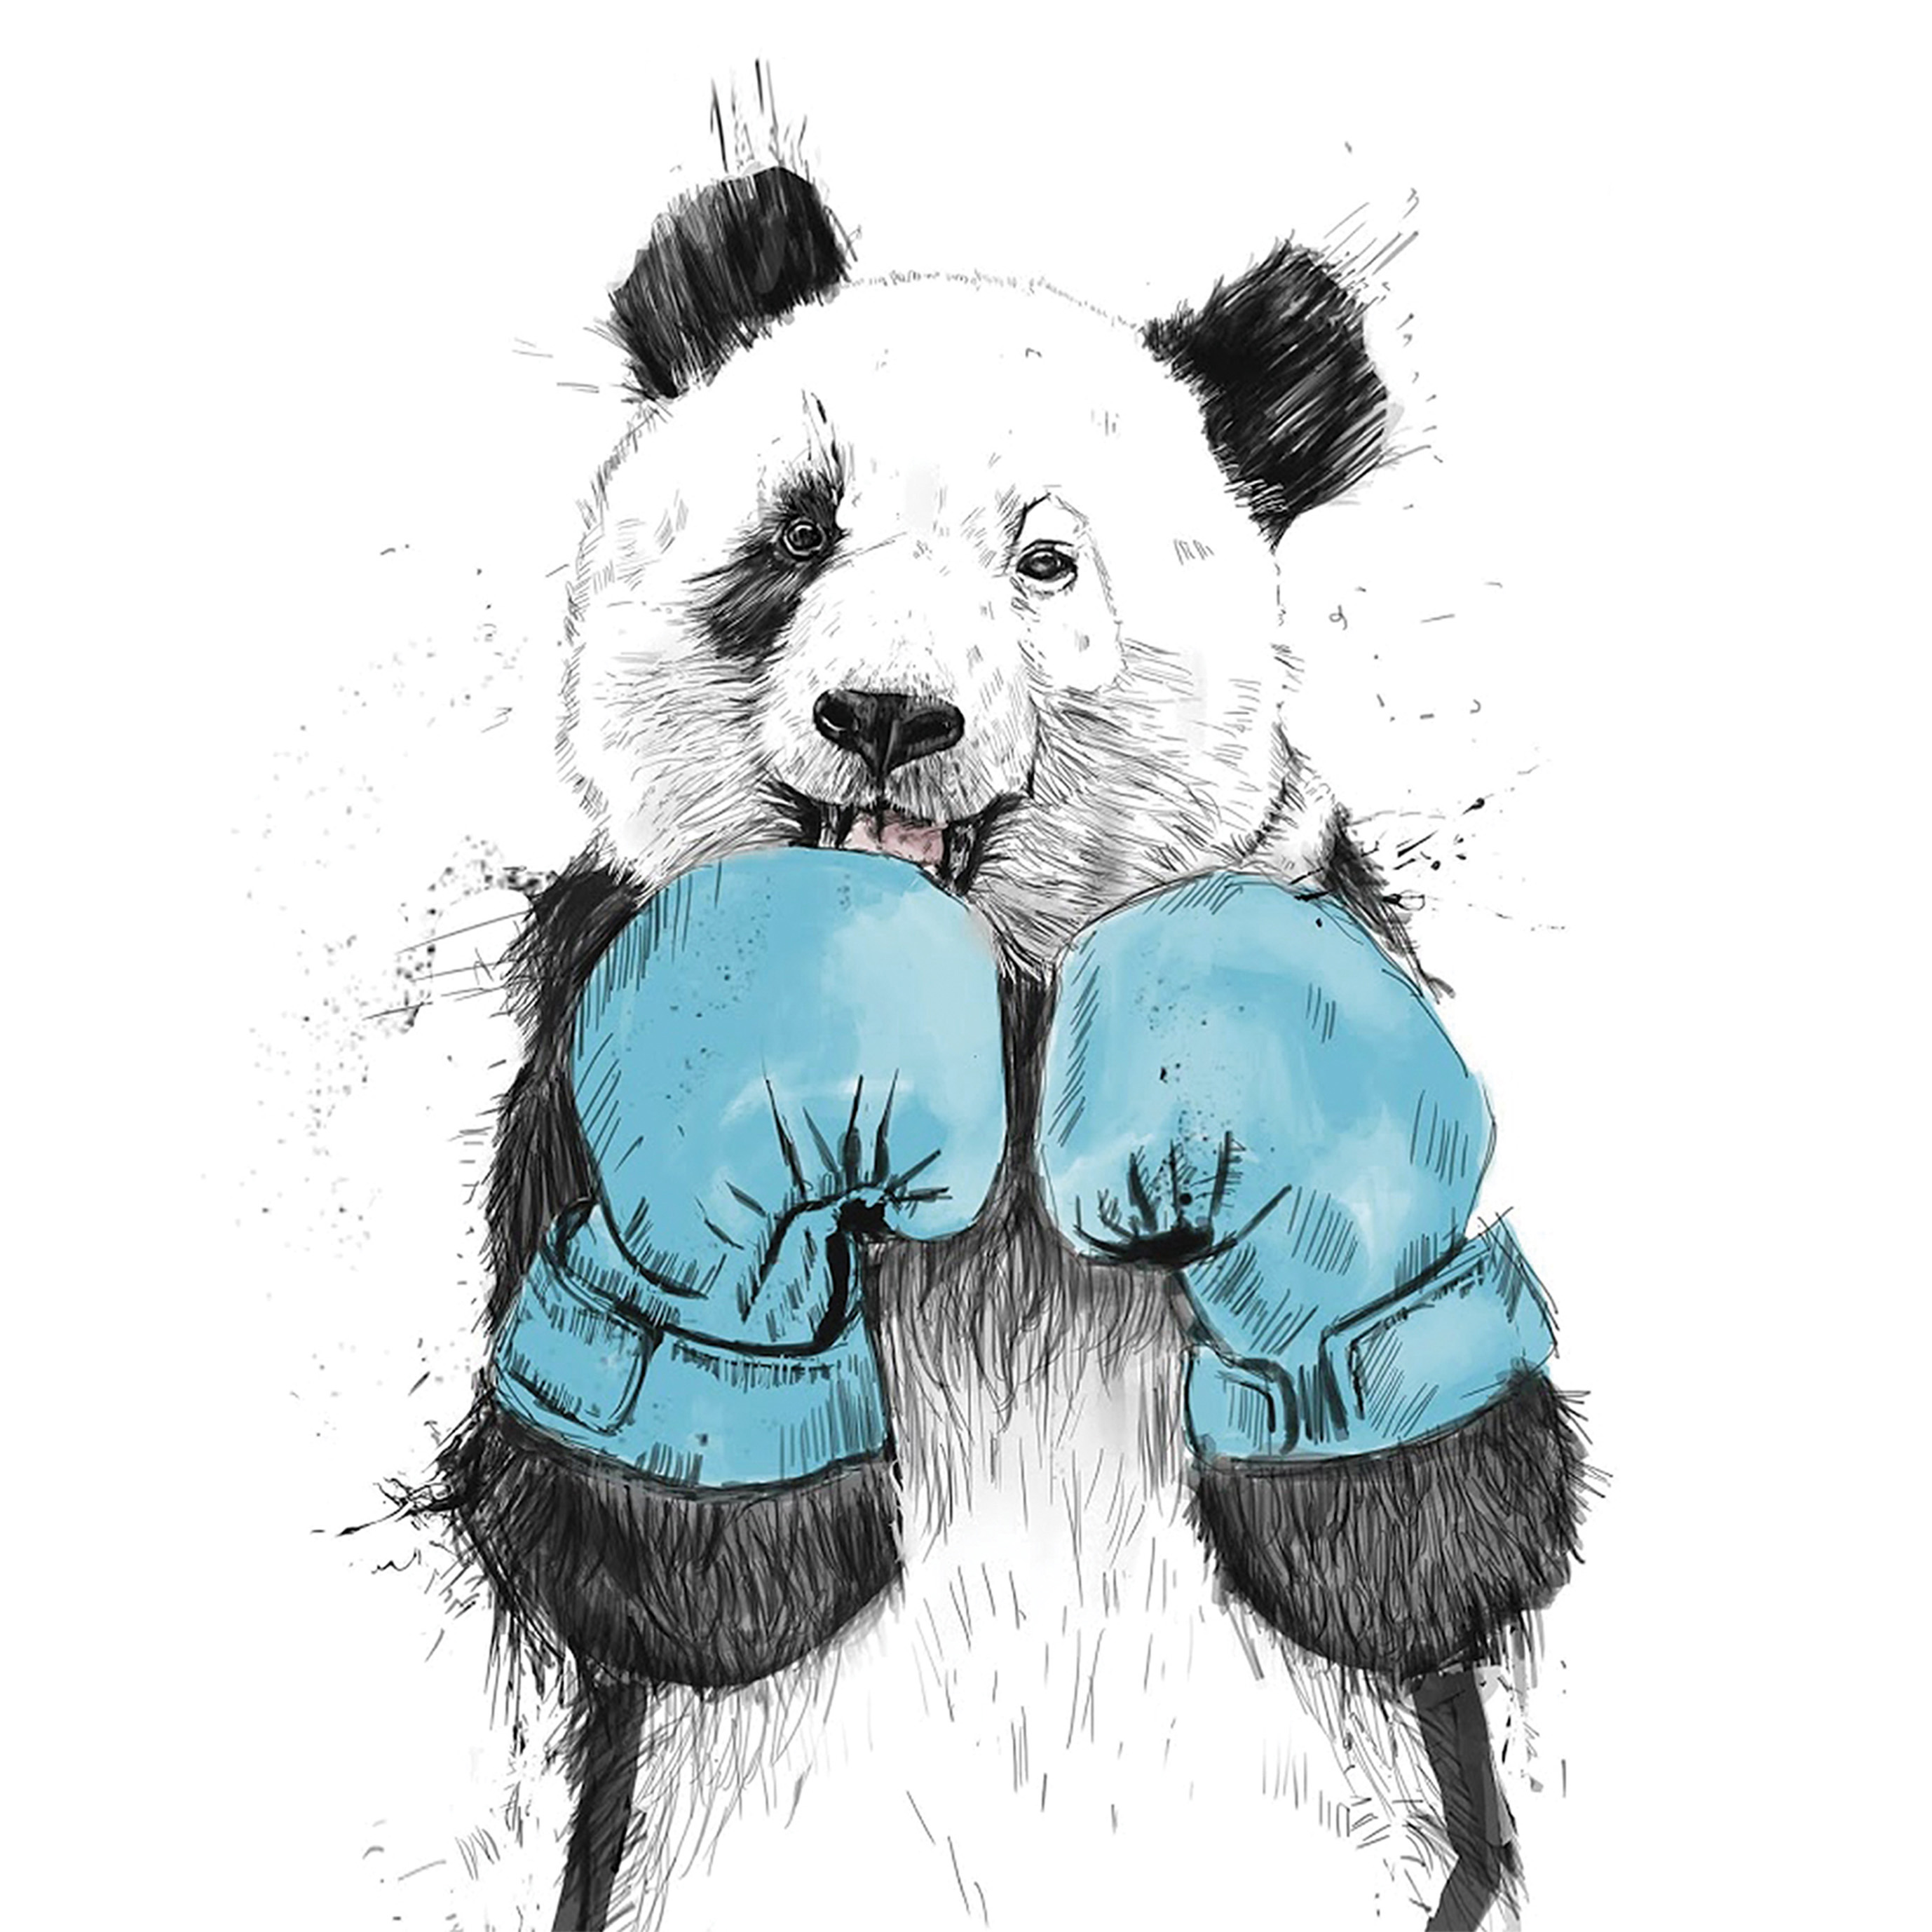 Панда в боксерских перчатках